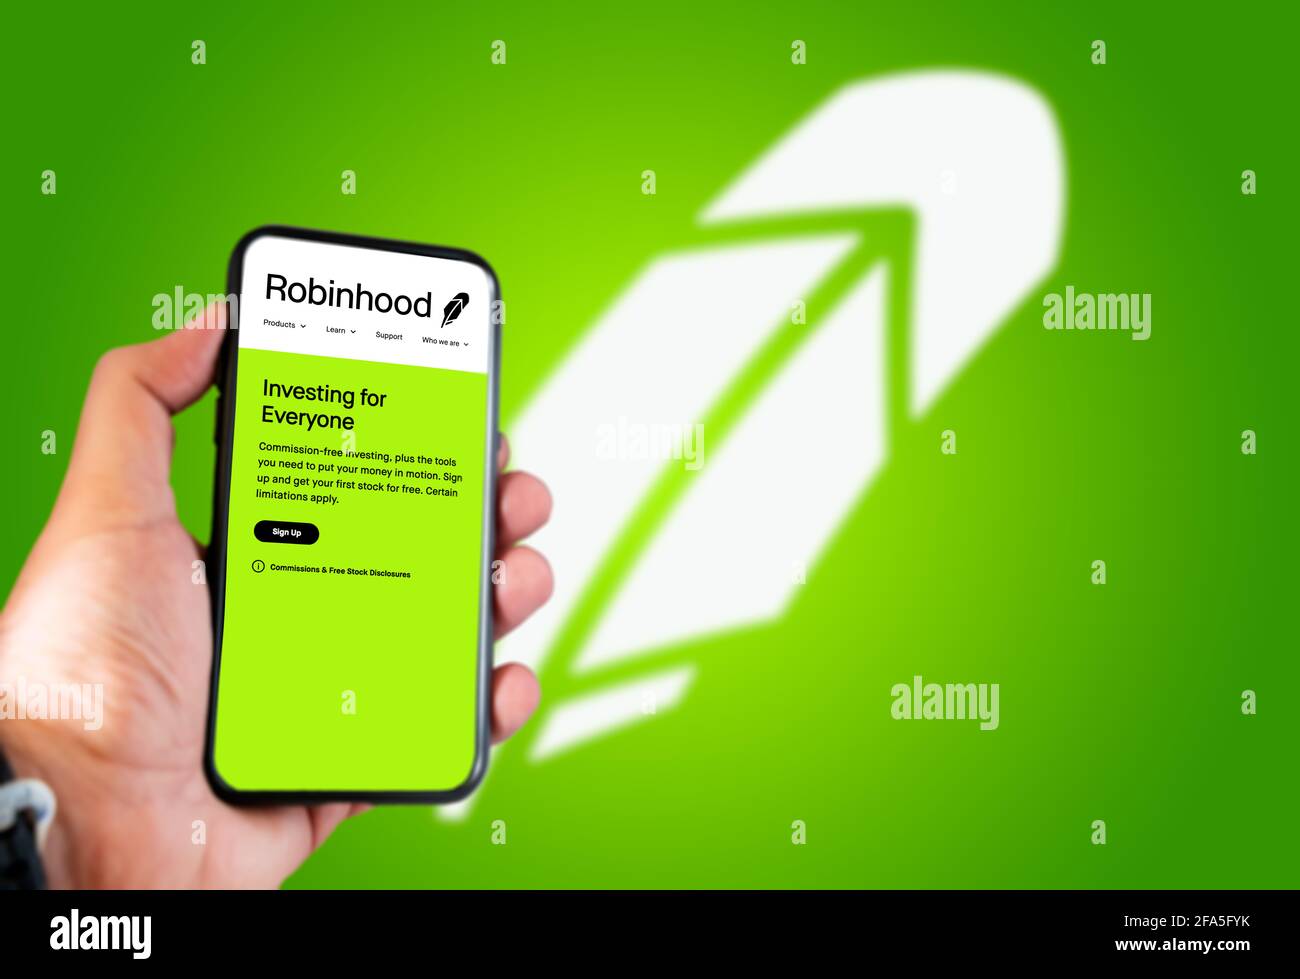 Menlo Park, CA, USA, avril 2021 : main tient un smartphone avec le logo Robinhood à l'écran. Arrière-plan vert avec logo flou. Robinhood est une nageoire Banque D'Images